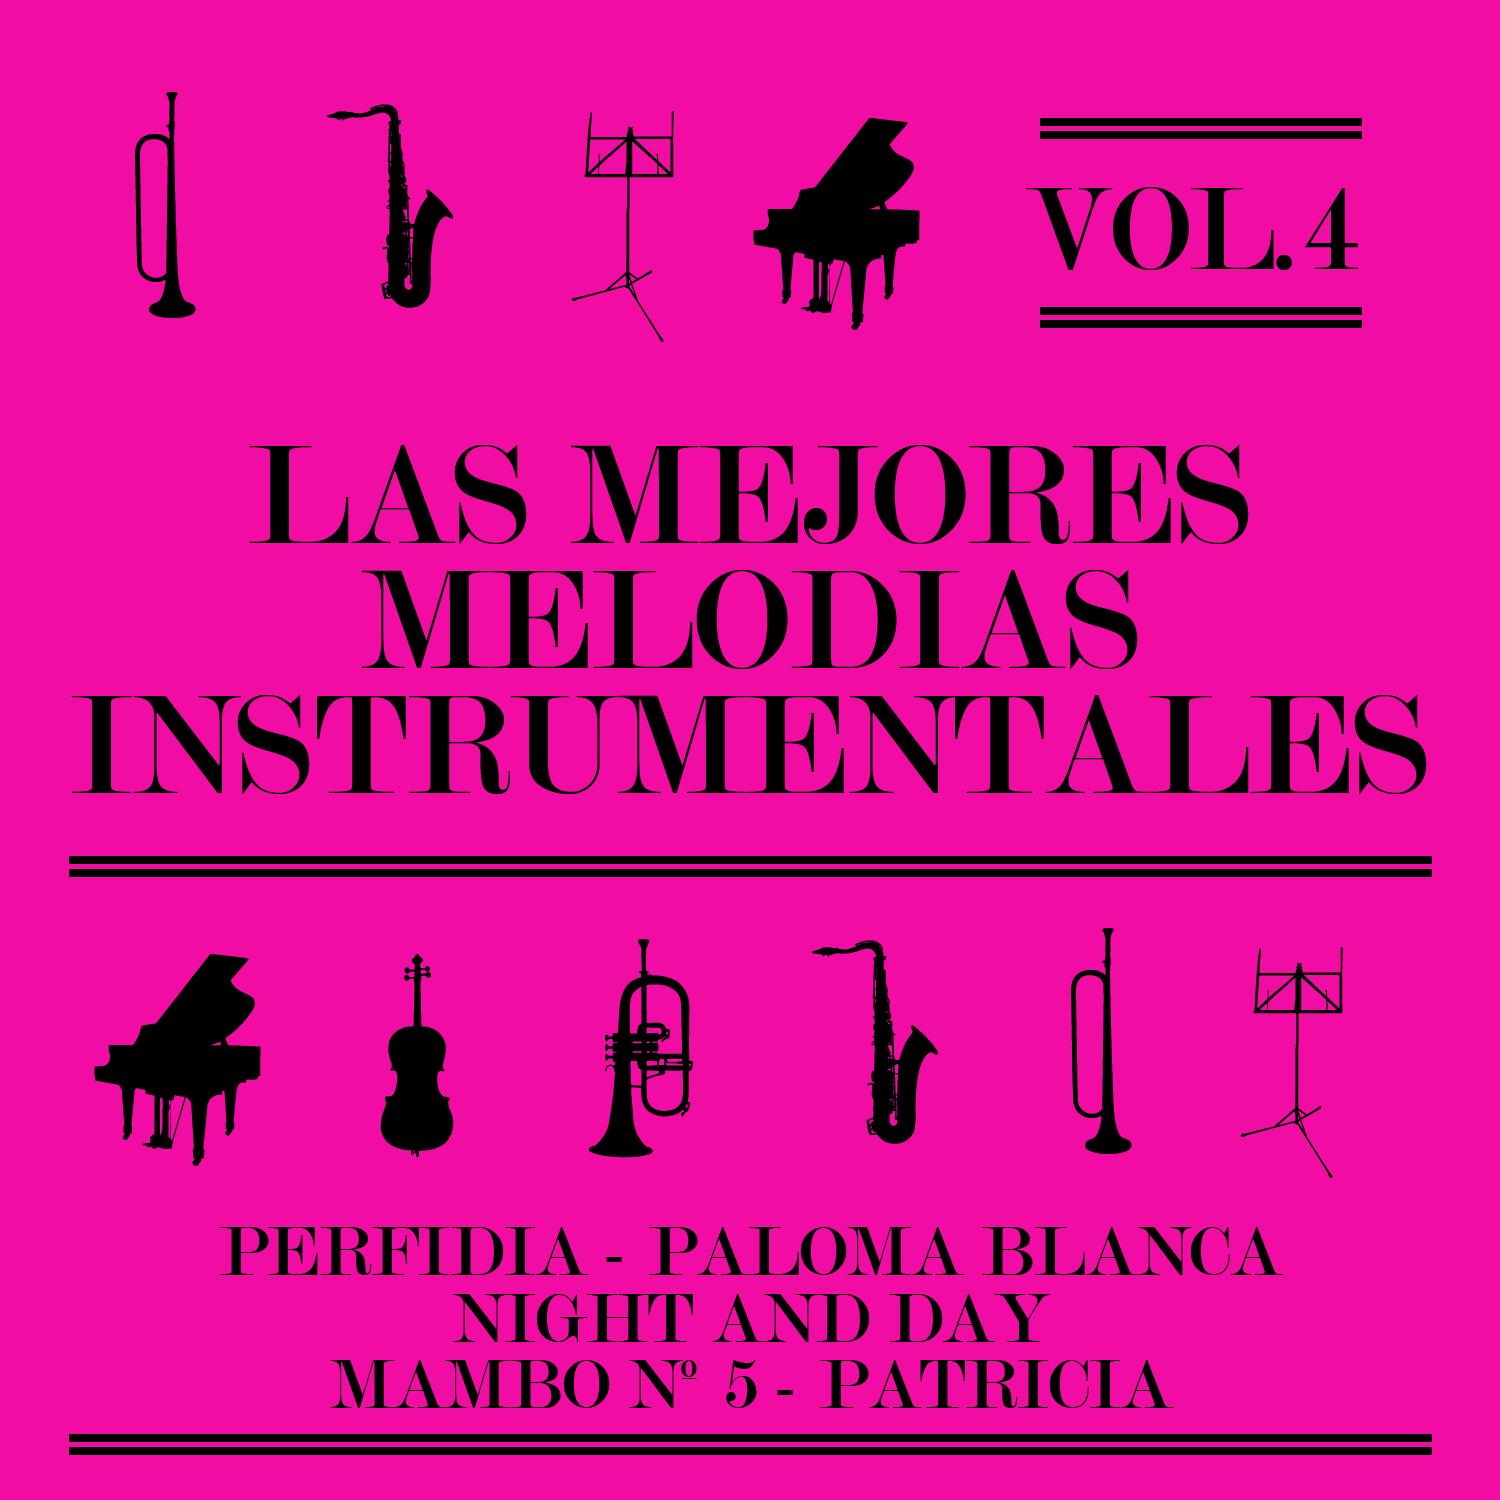 Las Mejores Melodi as Instrumentales Vol. 4